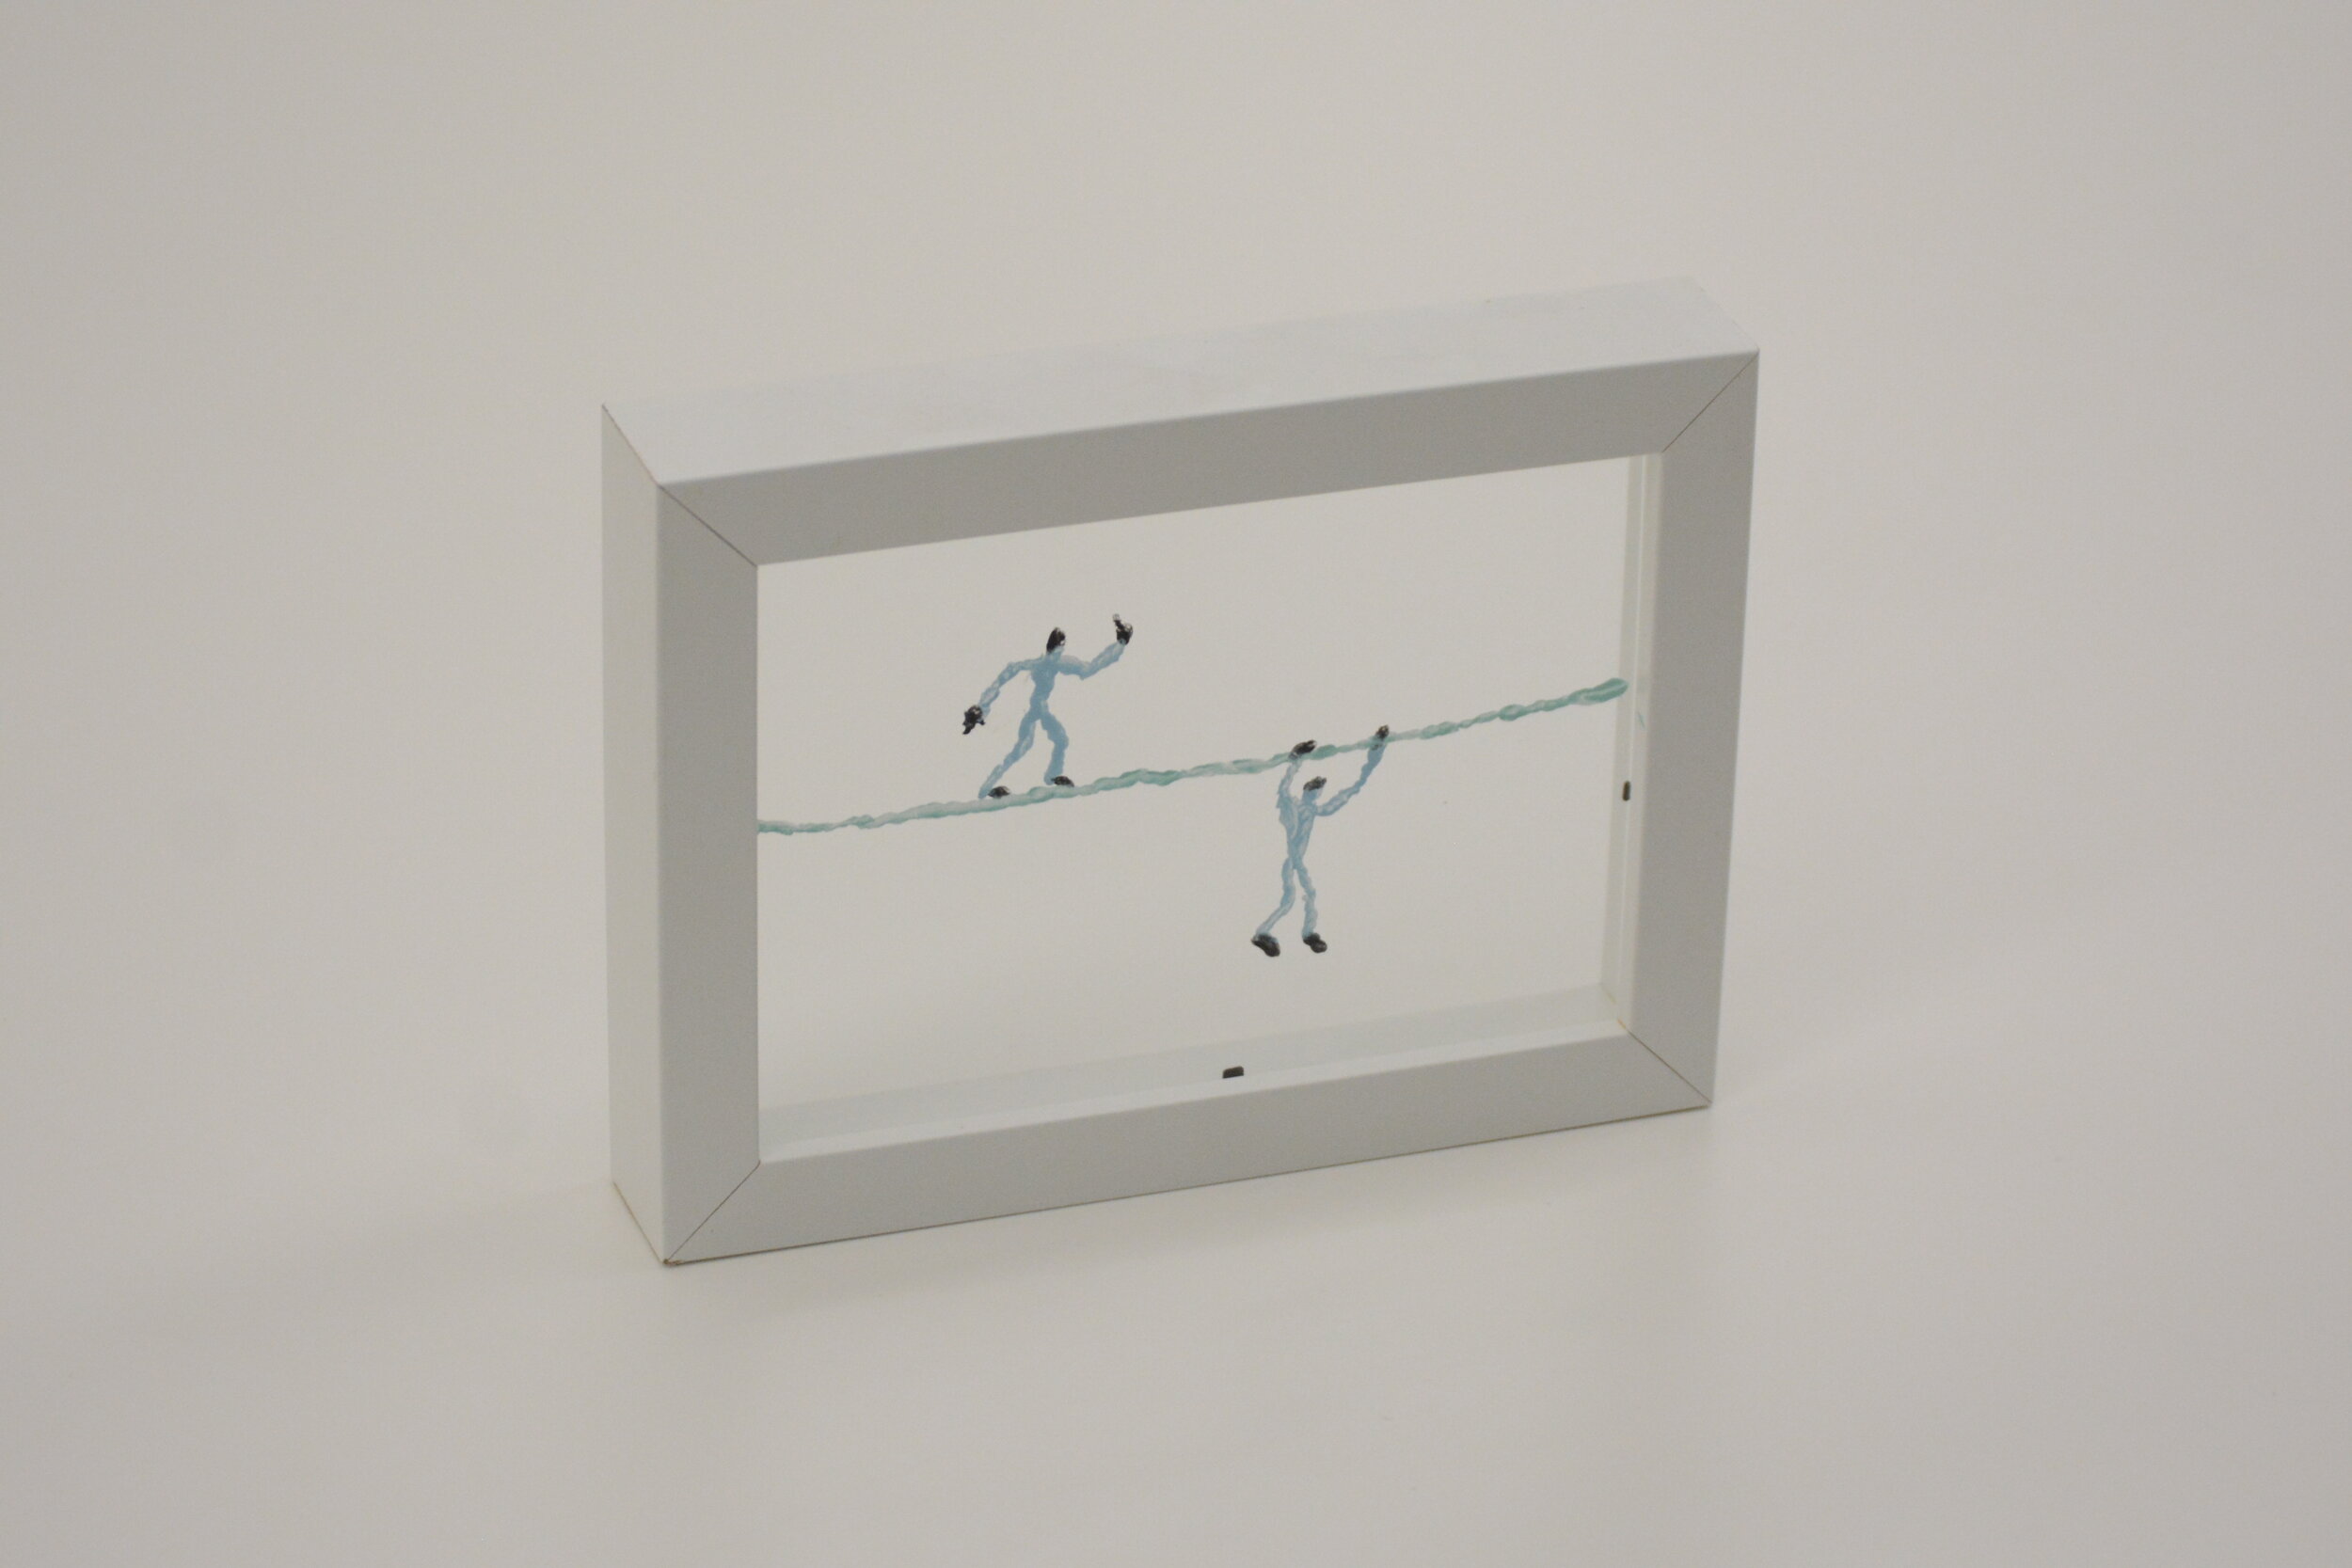  Ignacio Iturria.  Equilibristas  (2018). Técnica mixta, acrílico sobre vidrio. 15 x 20 x 3,5 cm. 